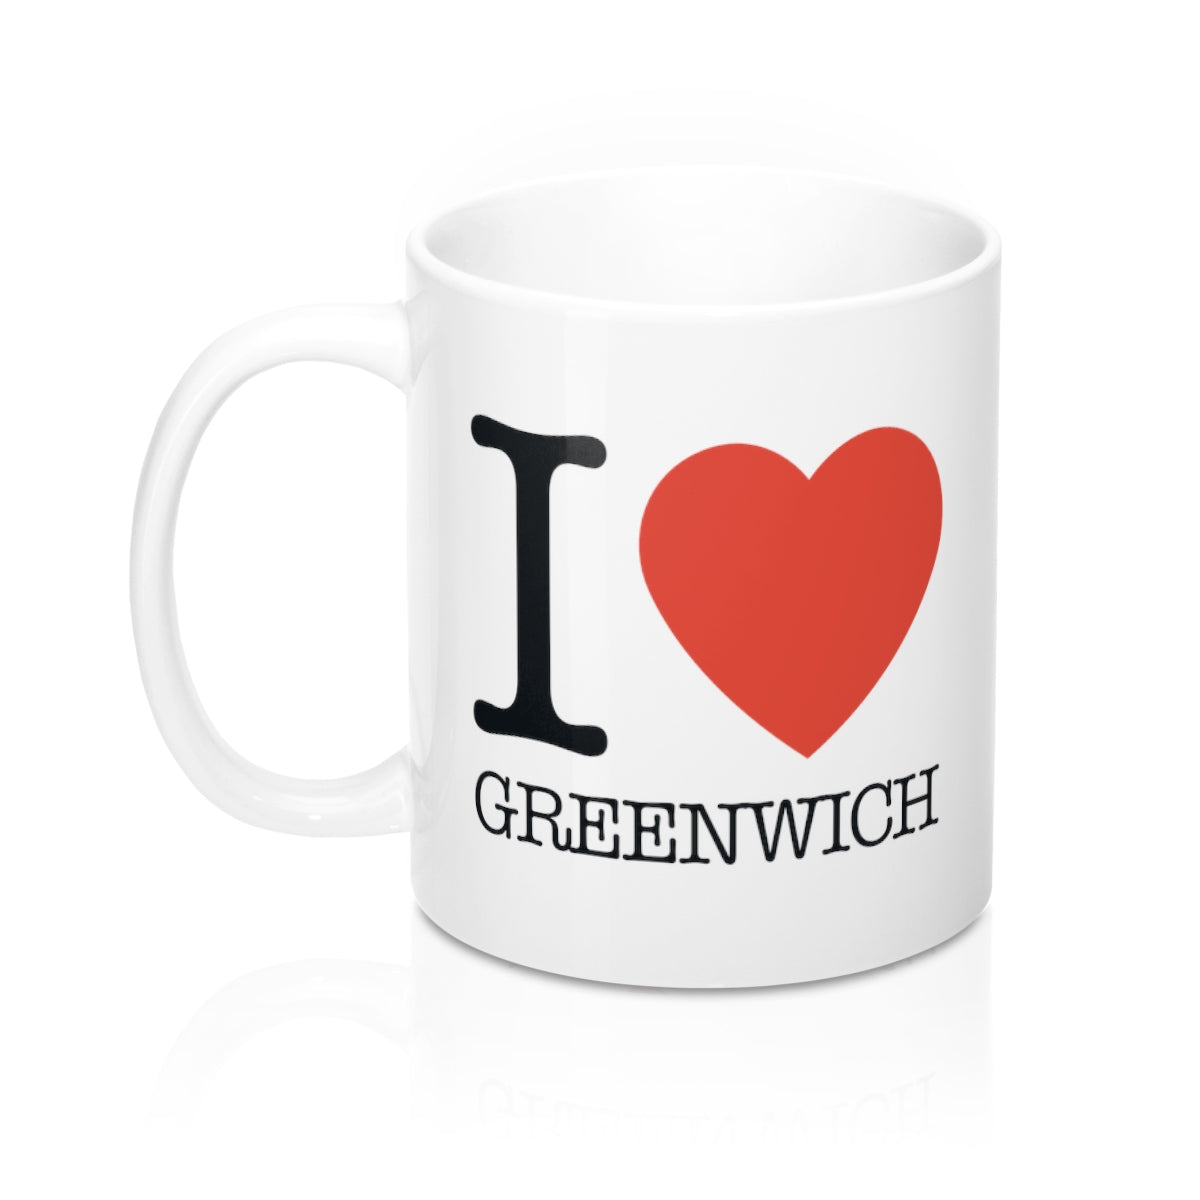 I Heart Greenwich Mug